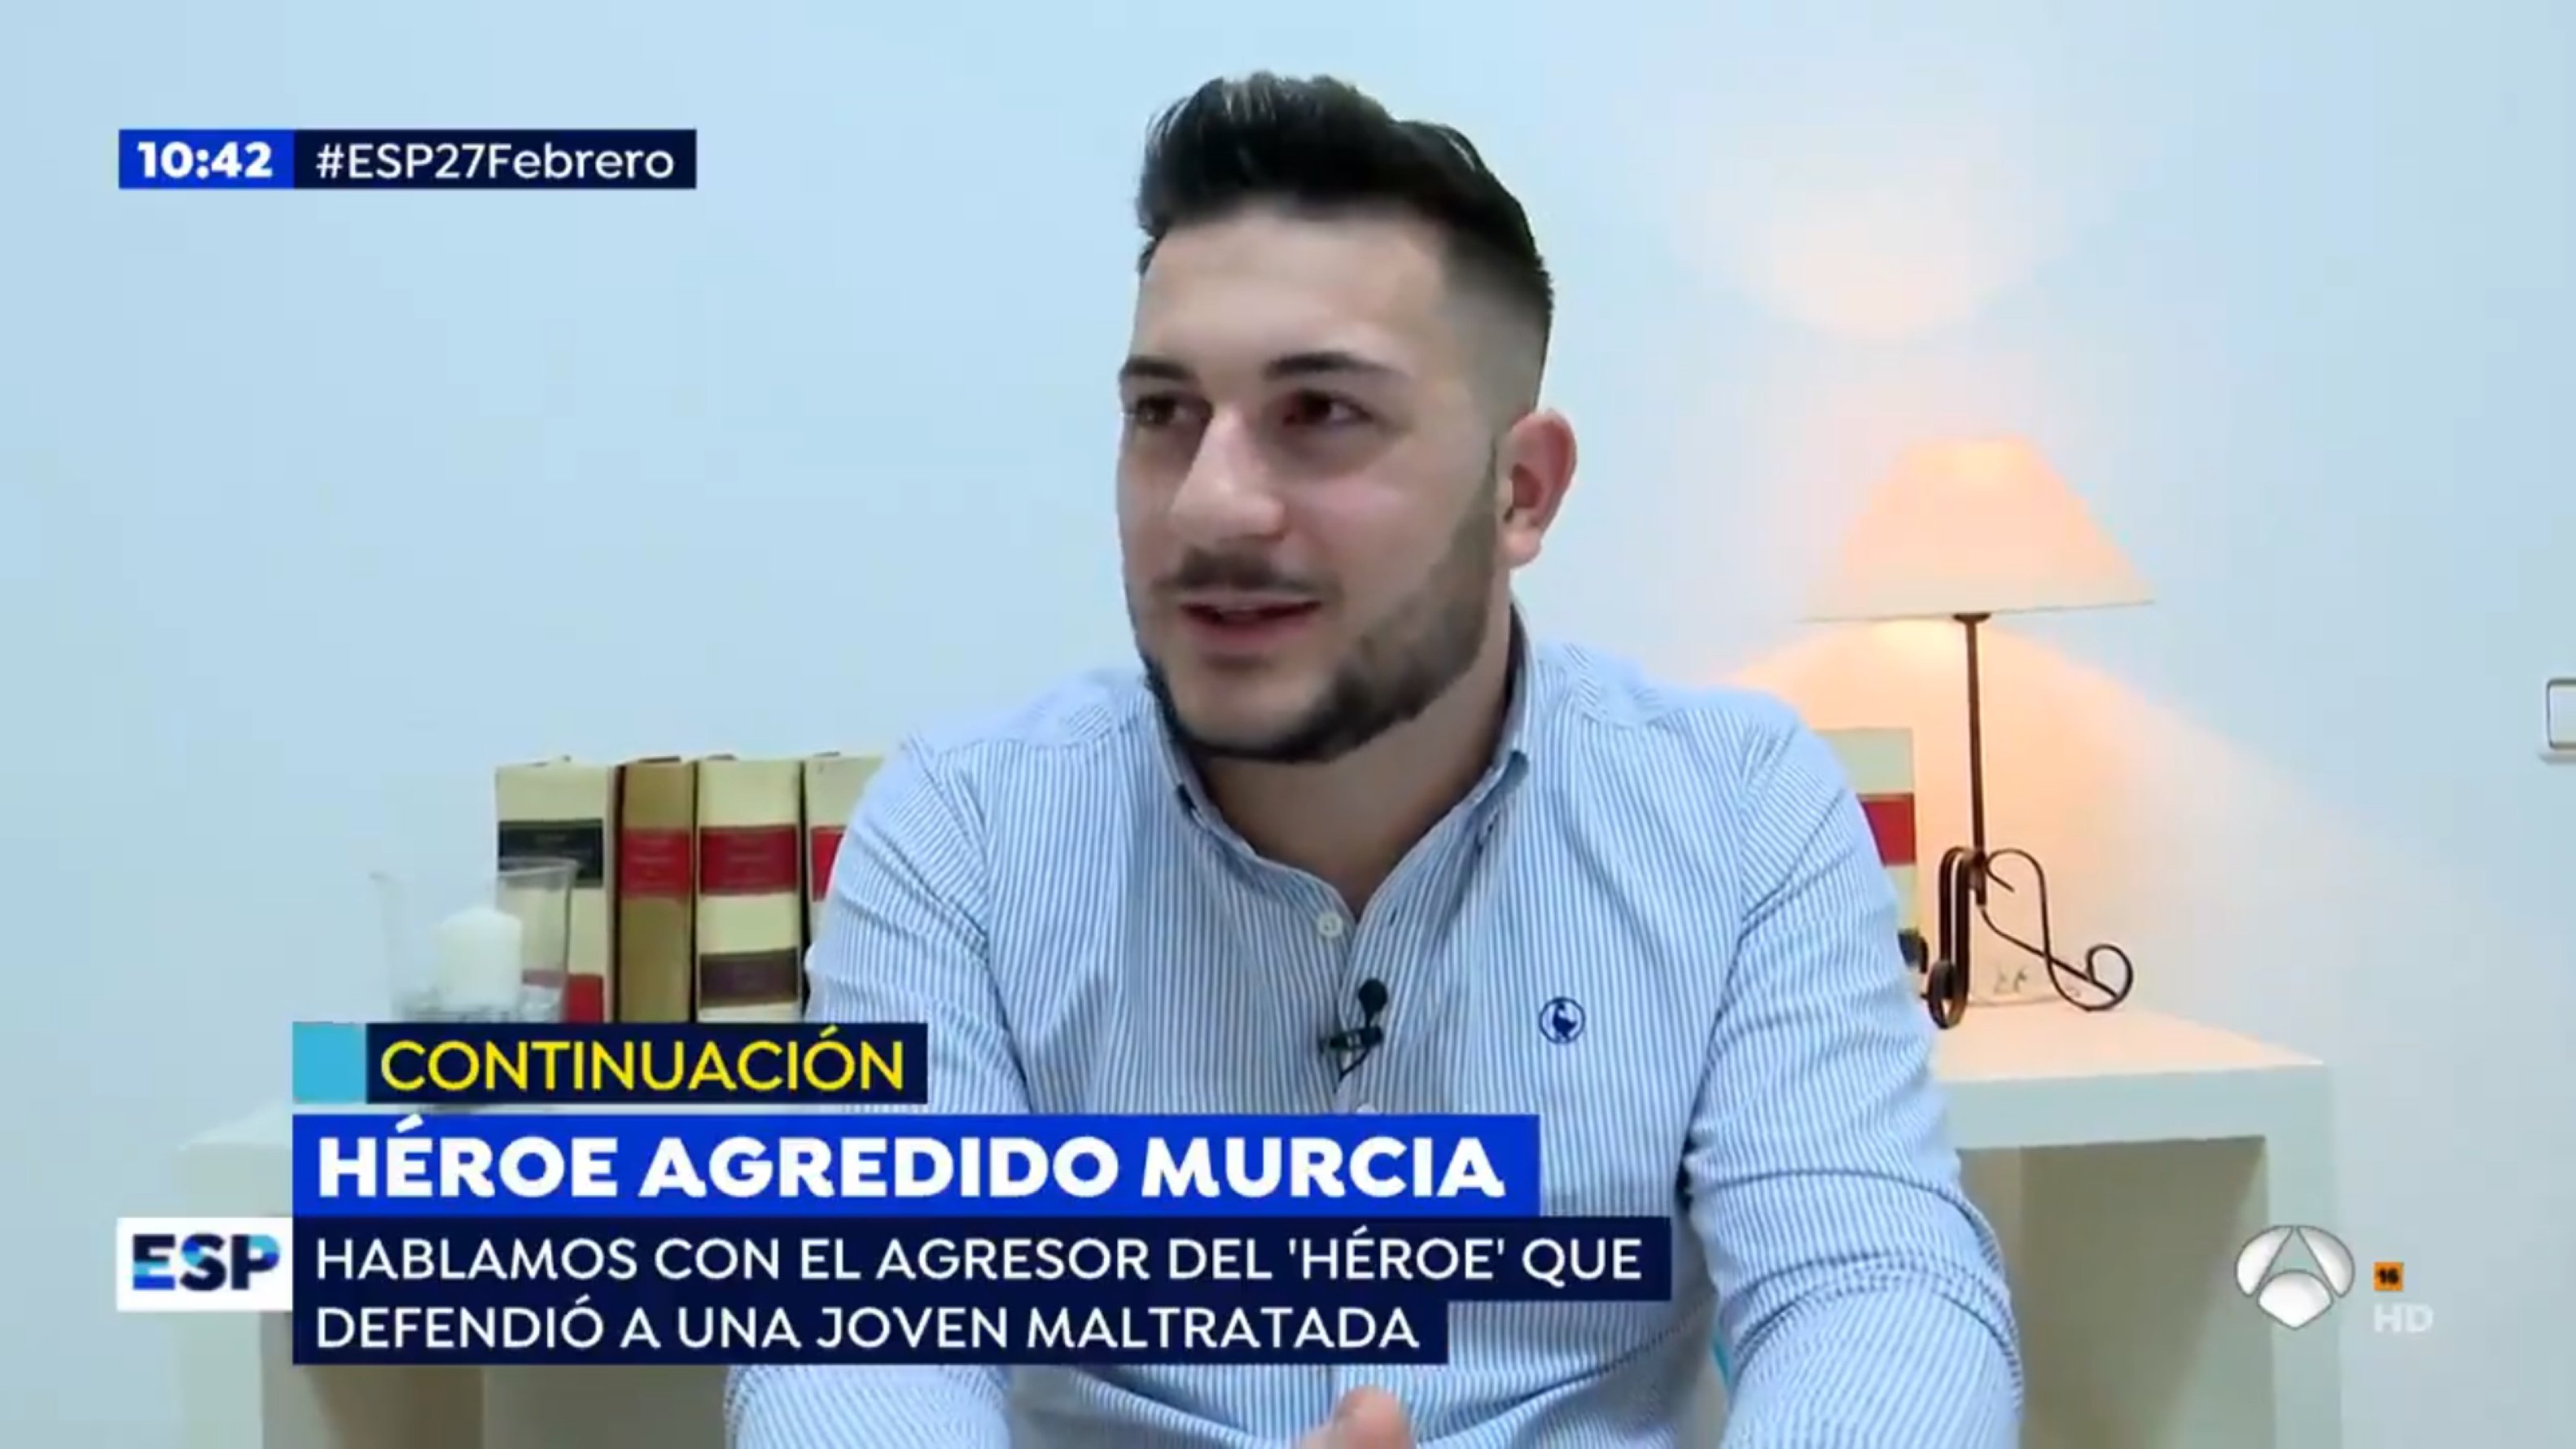 Indigna Antena 3 donant veu a un somrient agressor masclista: "basura"